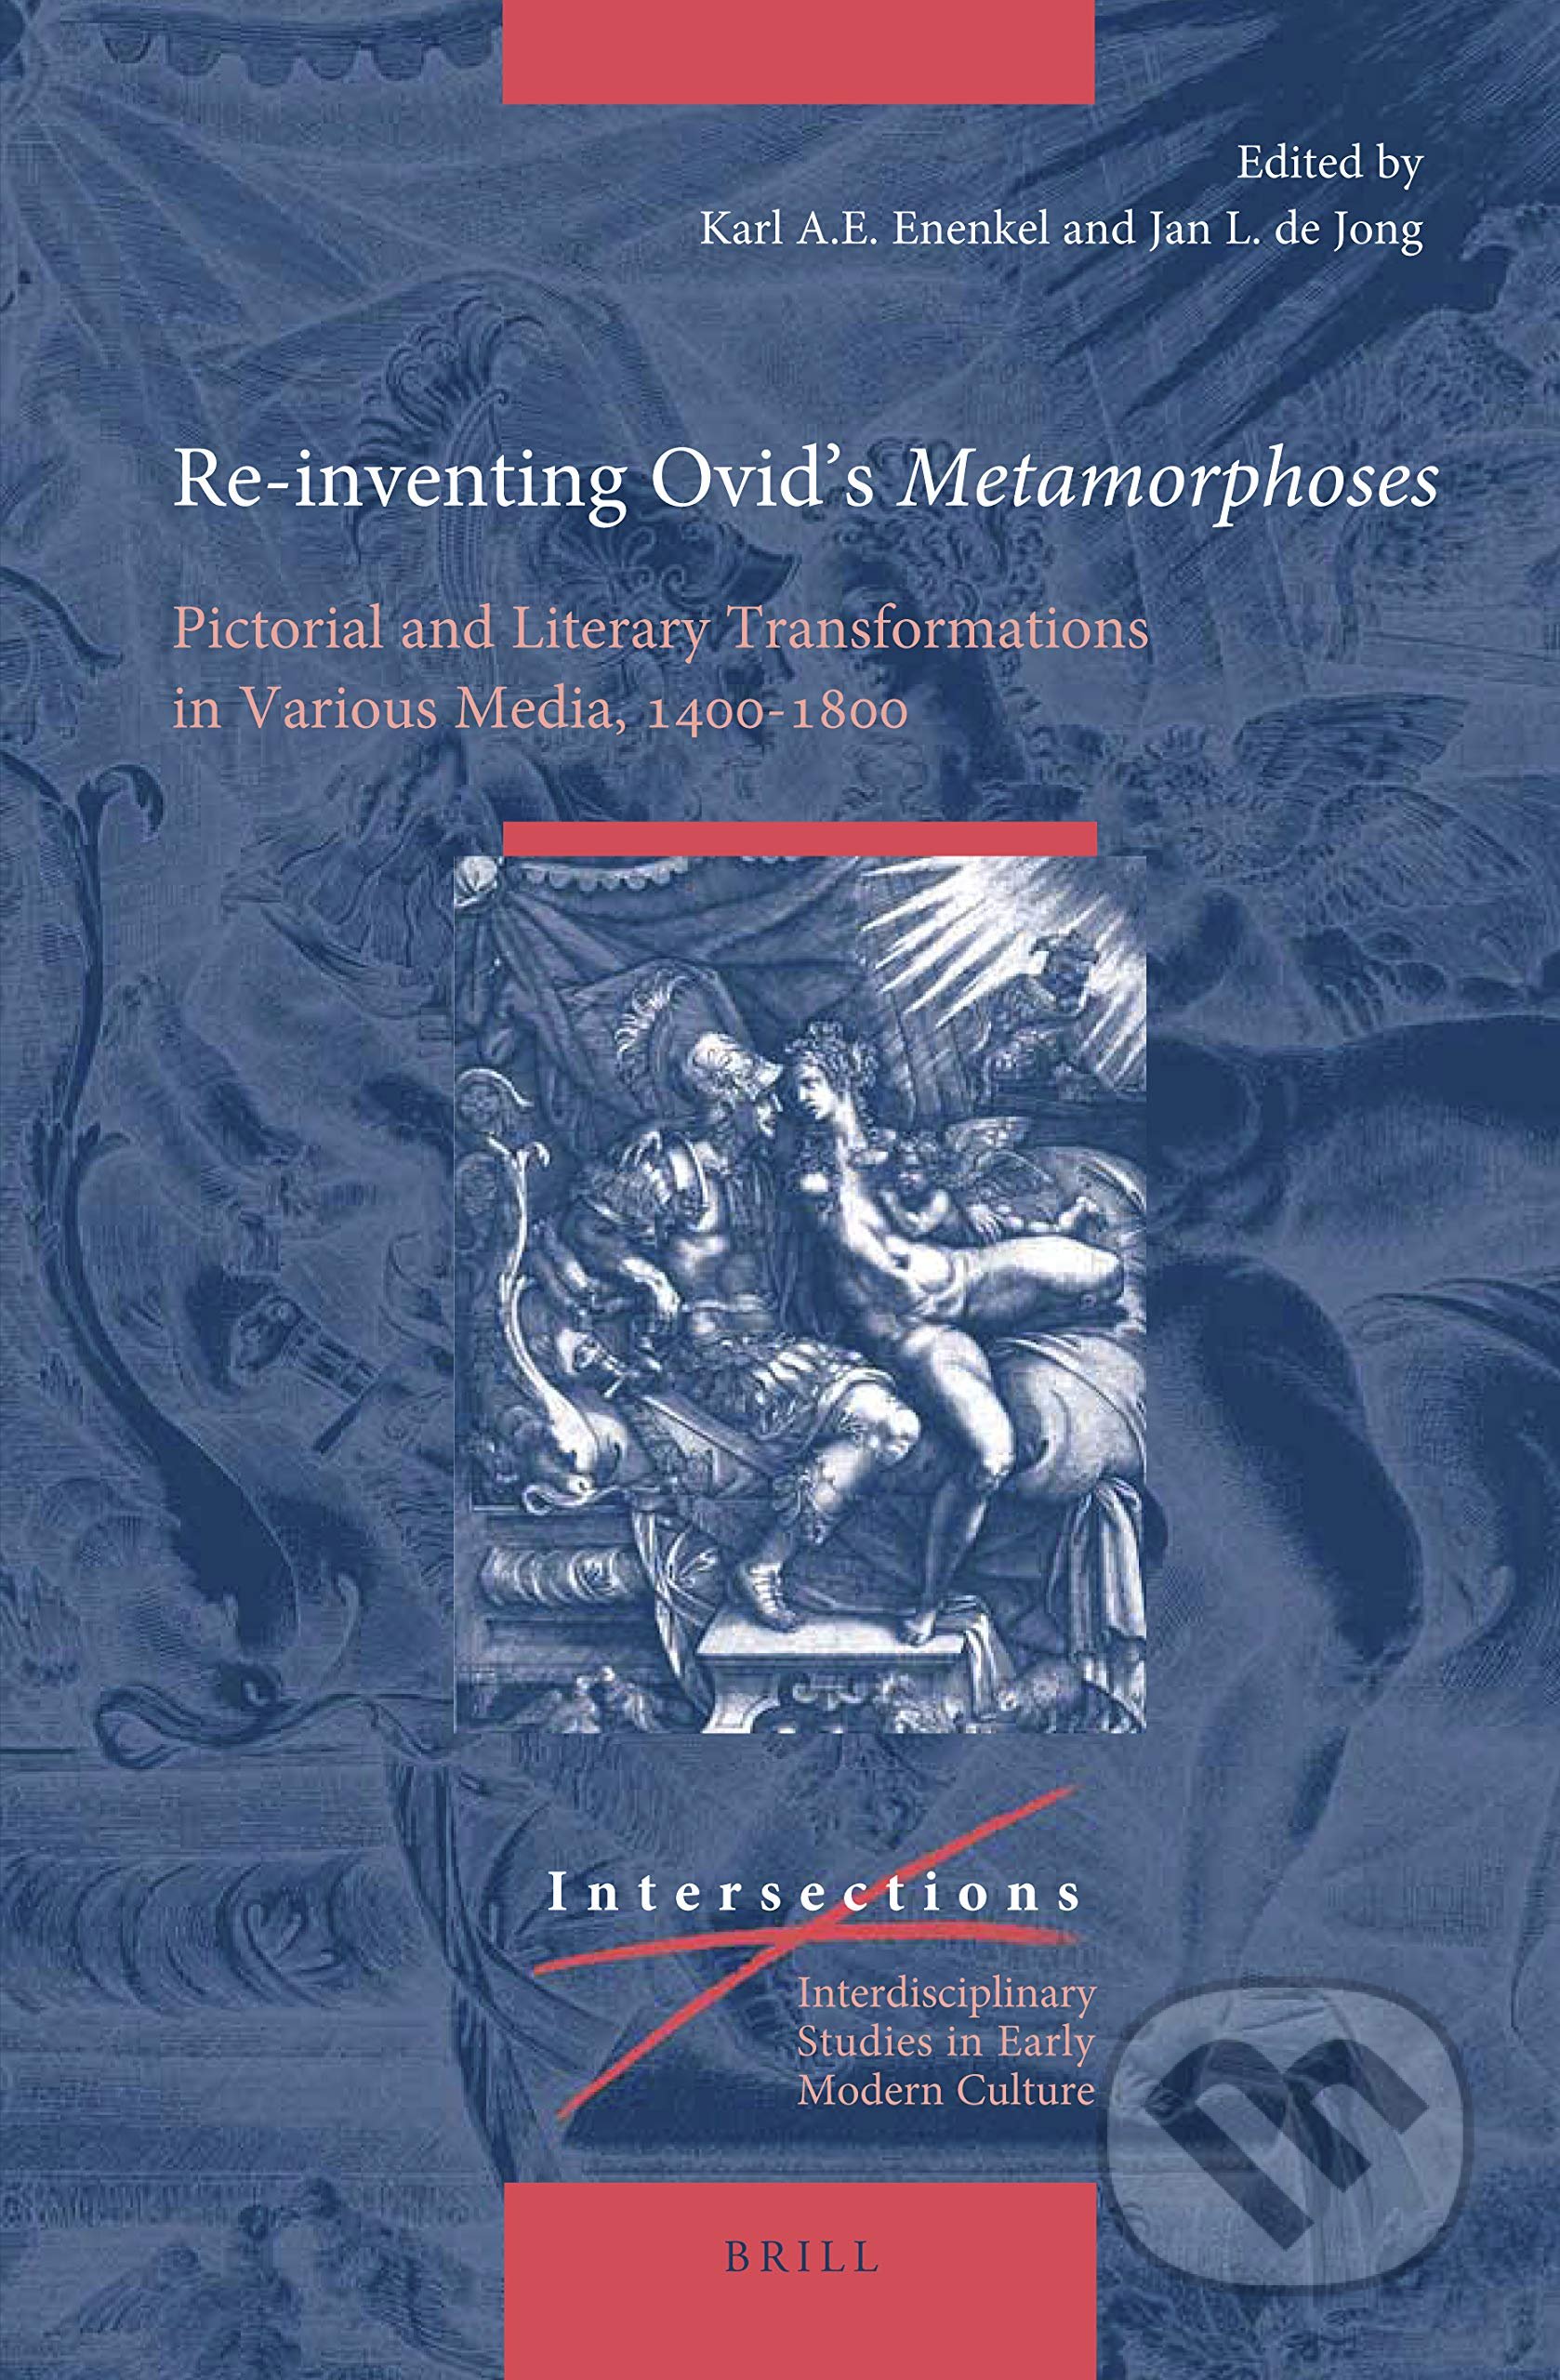 Re-inventing Ovid’s Metamorphoses - Karl A.E. Enenkel, Jan L. de Jong, Brill, 2020